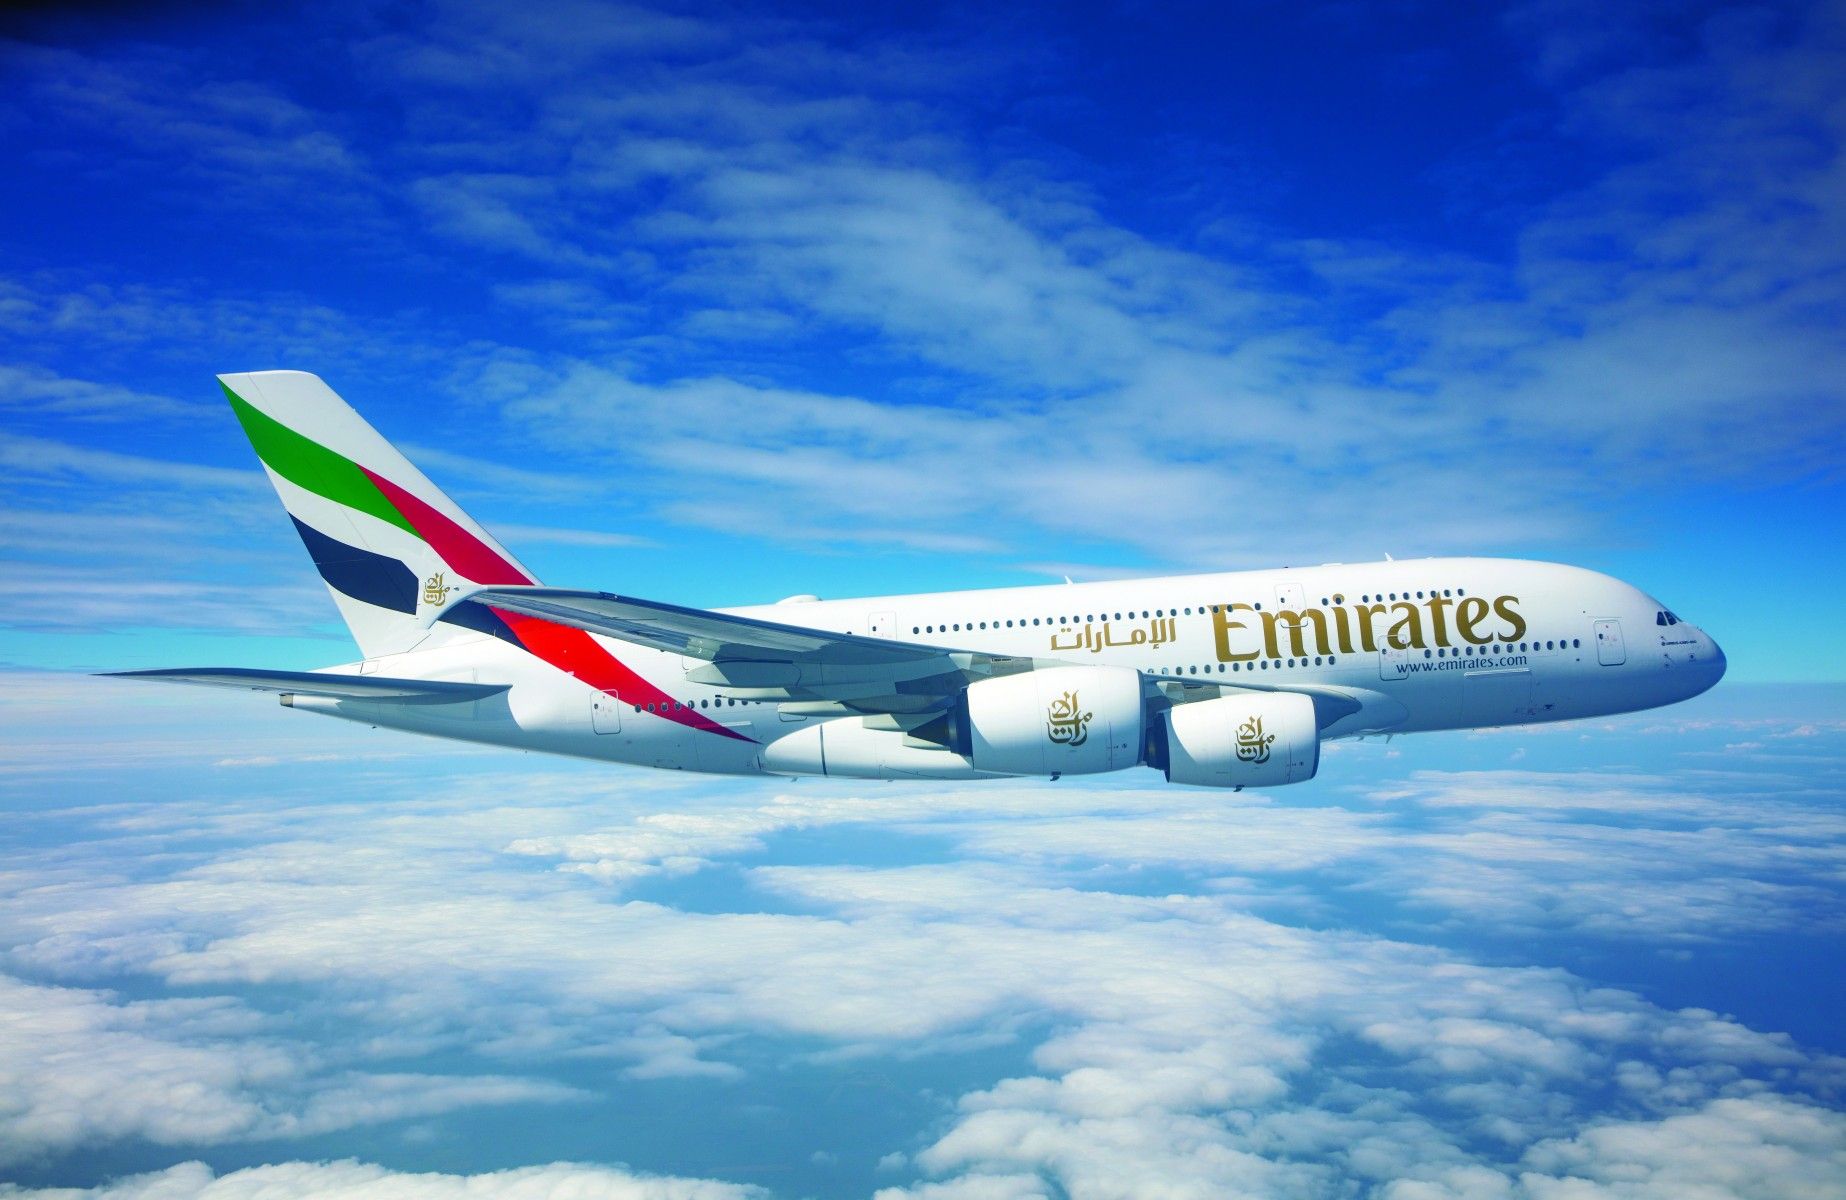 Emirates Airlines es la aerolínea internacional más grande del mundo, vuela a 158 destinos en 85 países y opera 269 aeronaves como Airbus A380 y Boeing 777.